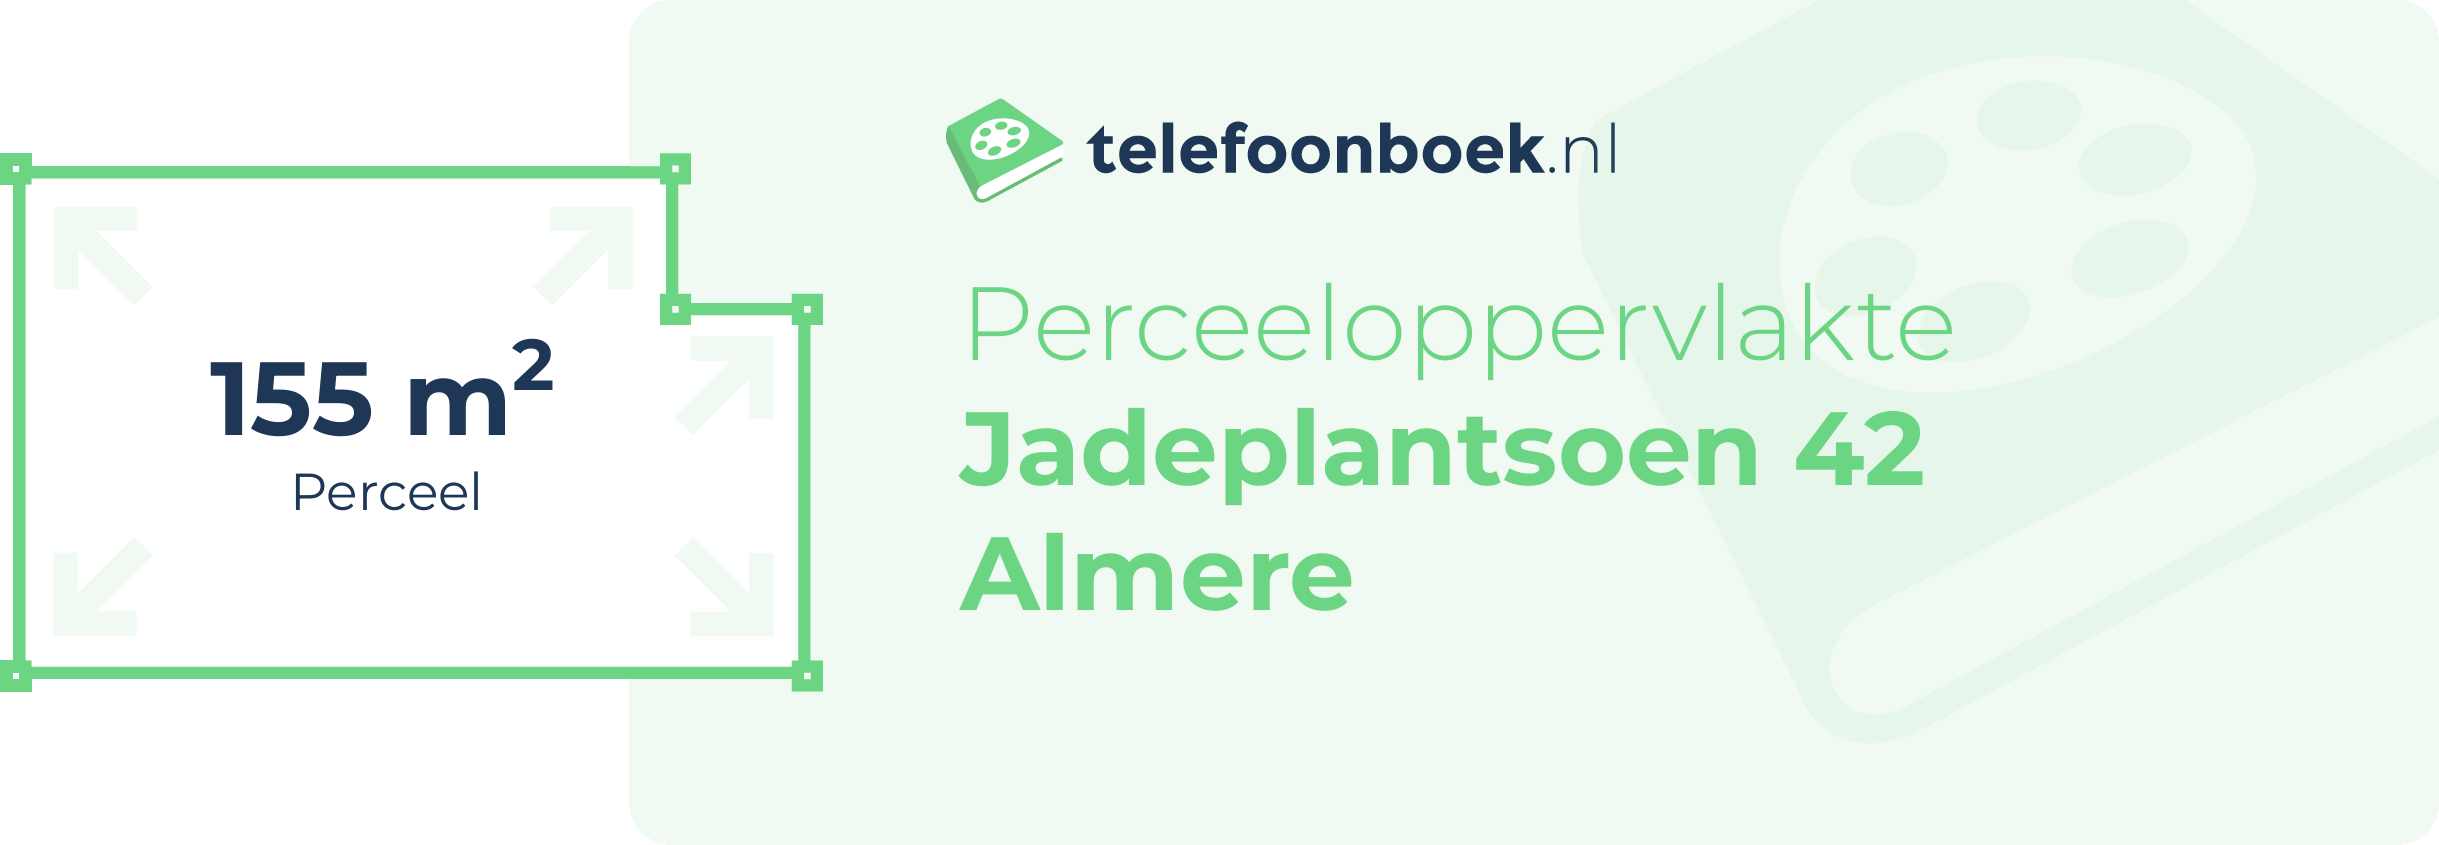 Perceeloppervlakte Jadeplantsoen 42 Almere